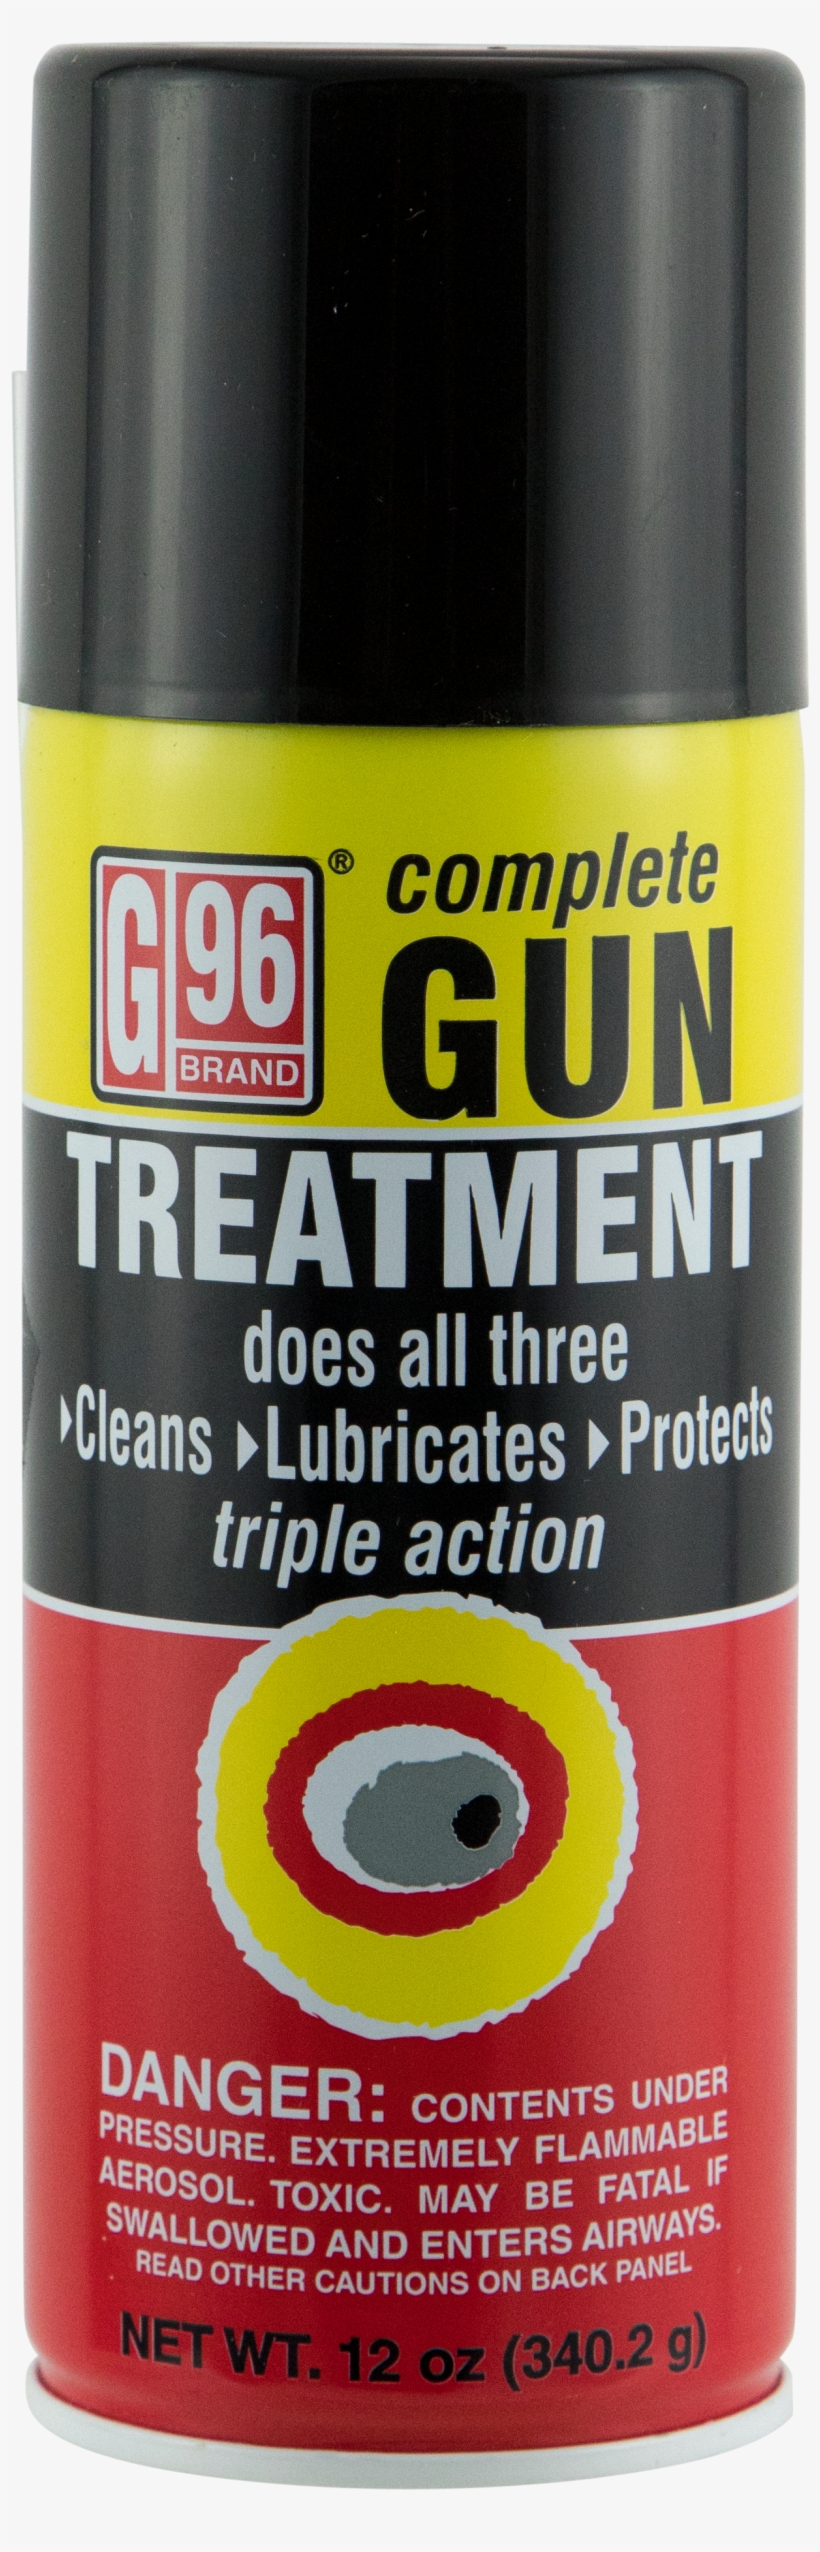 G96 1055p Gun Treatment Spray Lubricant 12 Oz - G96 Gun Treatment 12oz, transparent png #6273489